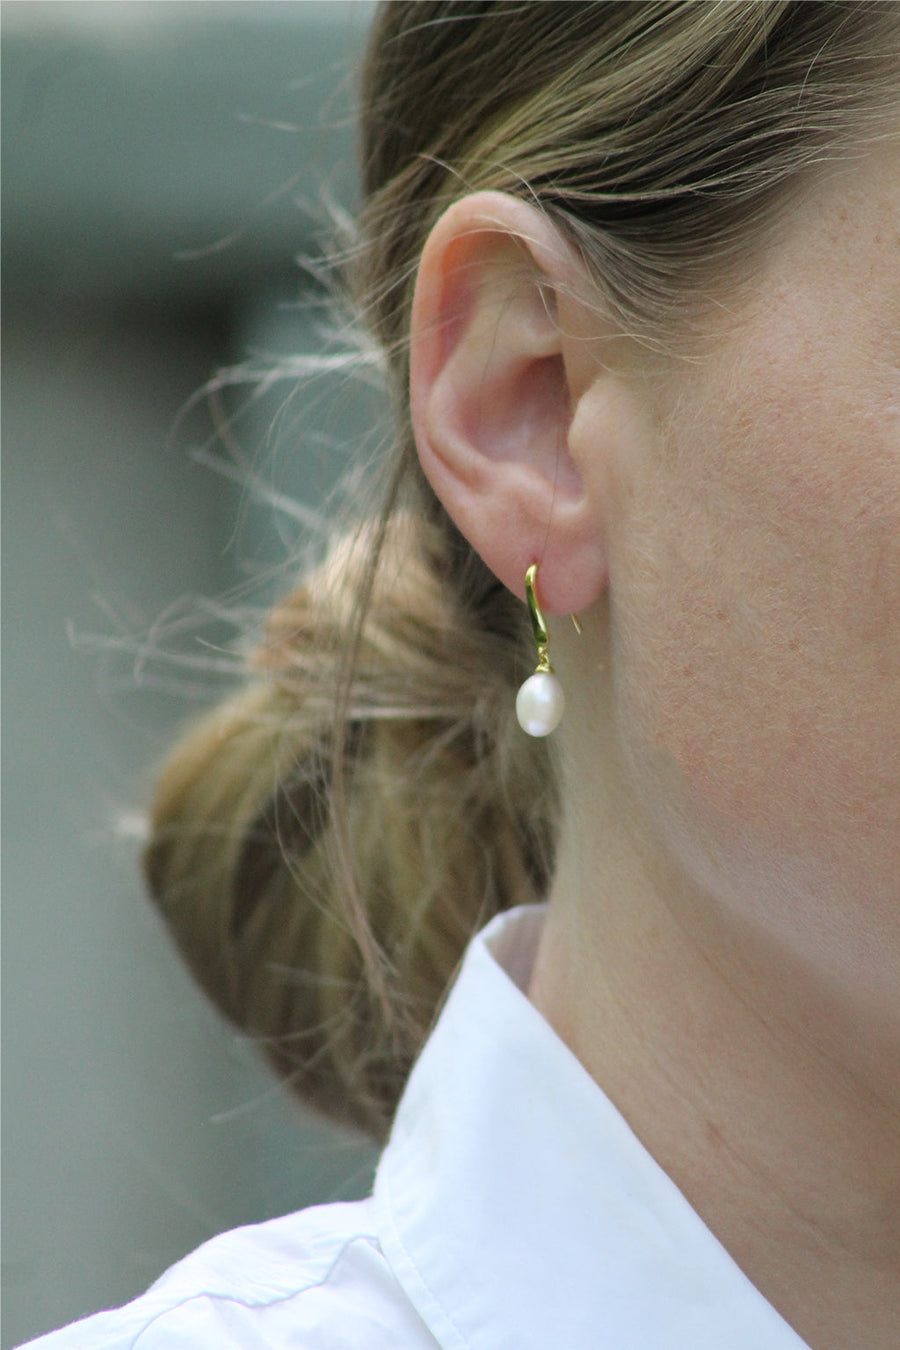 Mary-K - Gold Freshwater Pearl Drop Earrings